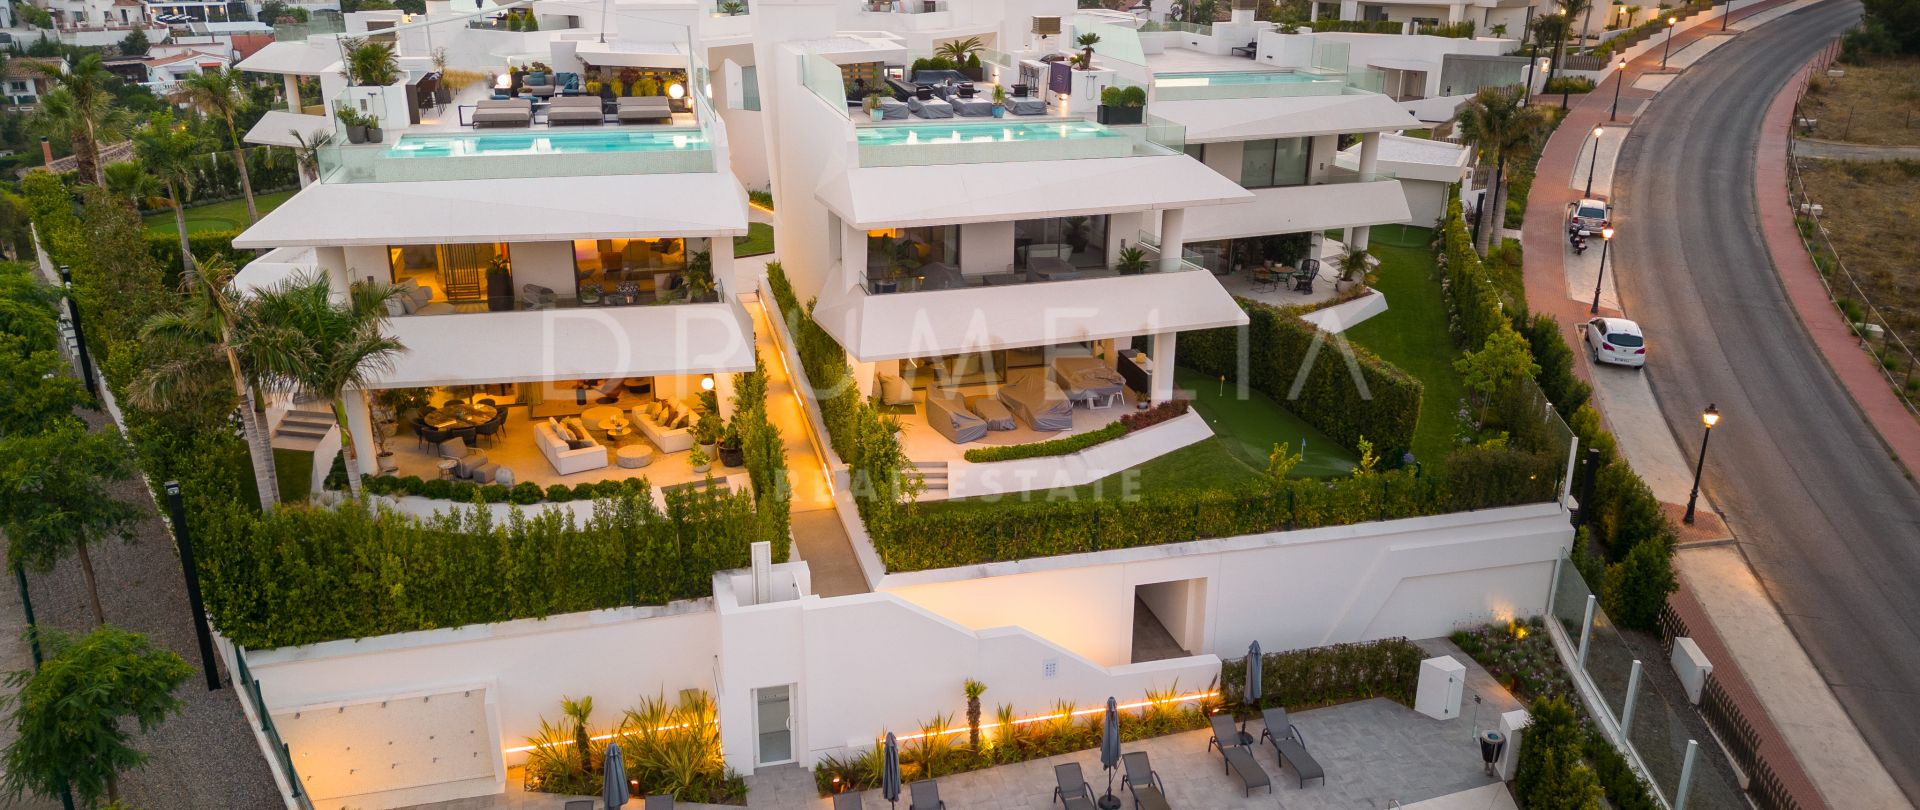 Espectacular villa adosada nueva y moderna en Nueva Andalucia, Marbella